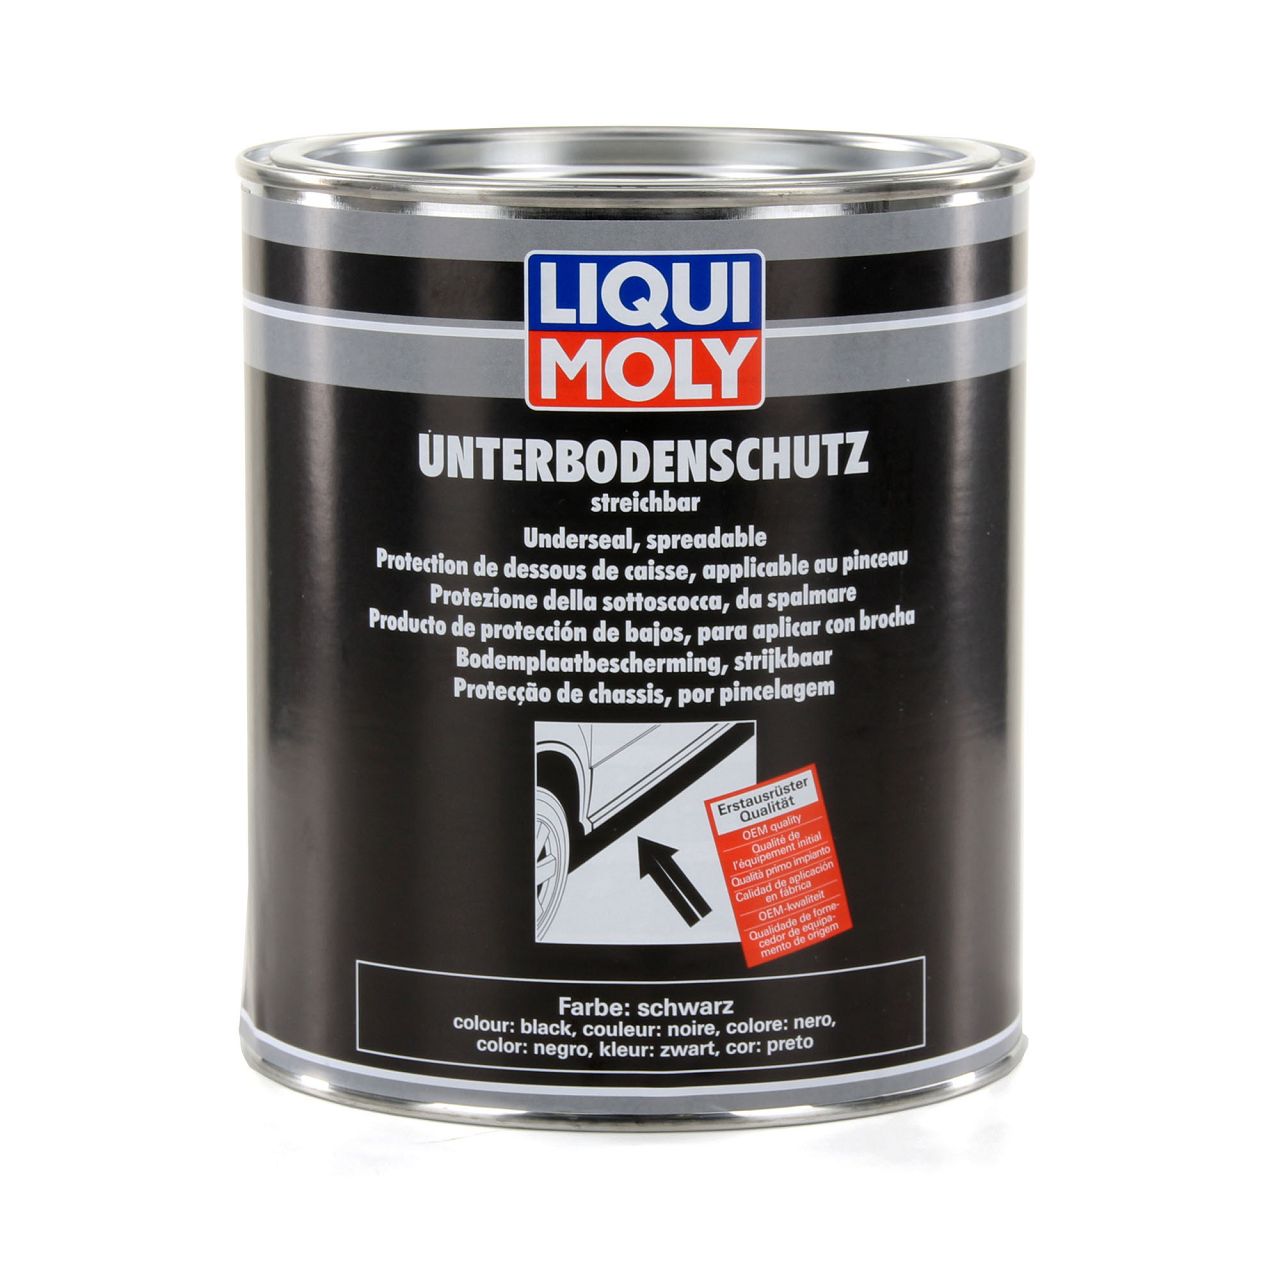 LIQUI MOLY 6119 Unterboden-Schutz Unterbodenschutz streichbar SCHWARZ 2kg